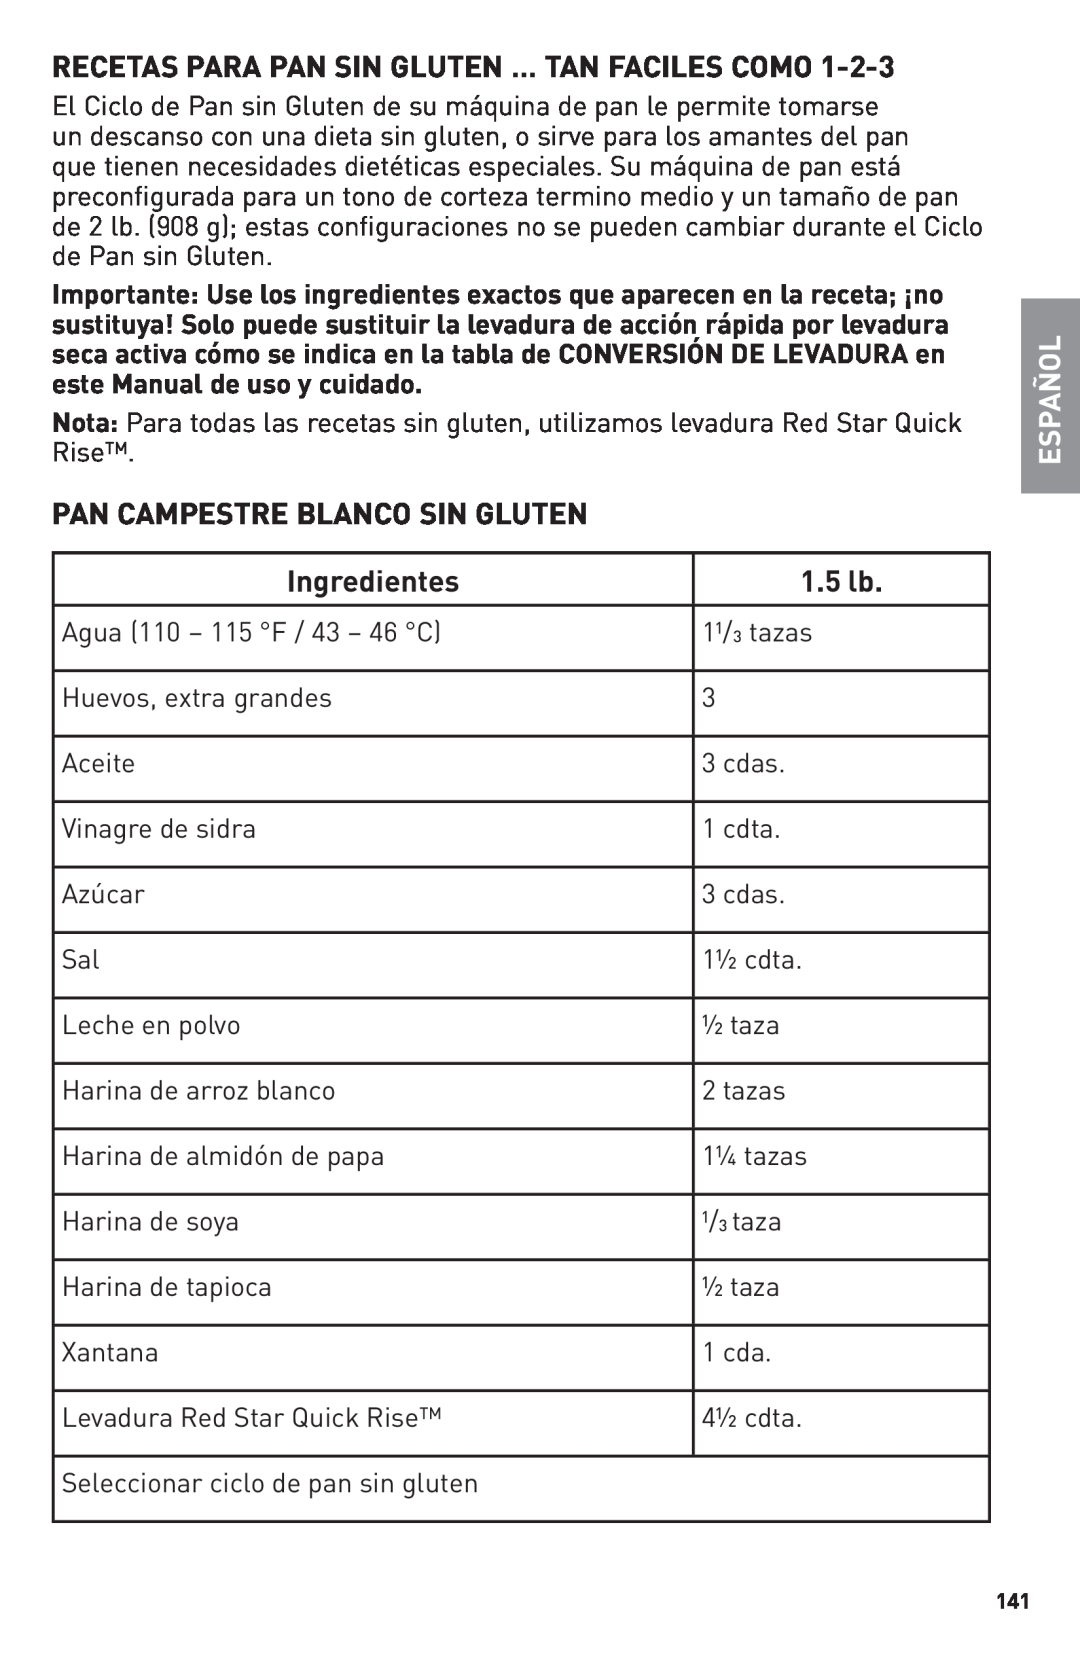 Breadman Bring Home the Bakery Recetas Para Pan Sin Gluten ... Tan Faciles Como, Pan Campestre Blanco Sin Gluten, 1.5 lb 